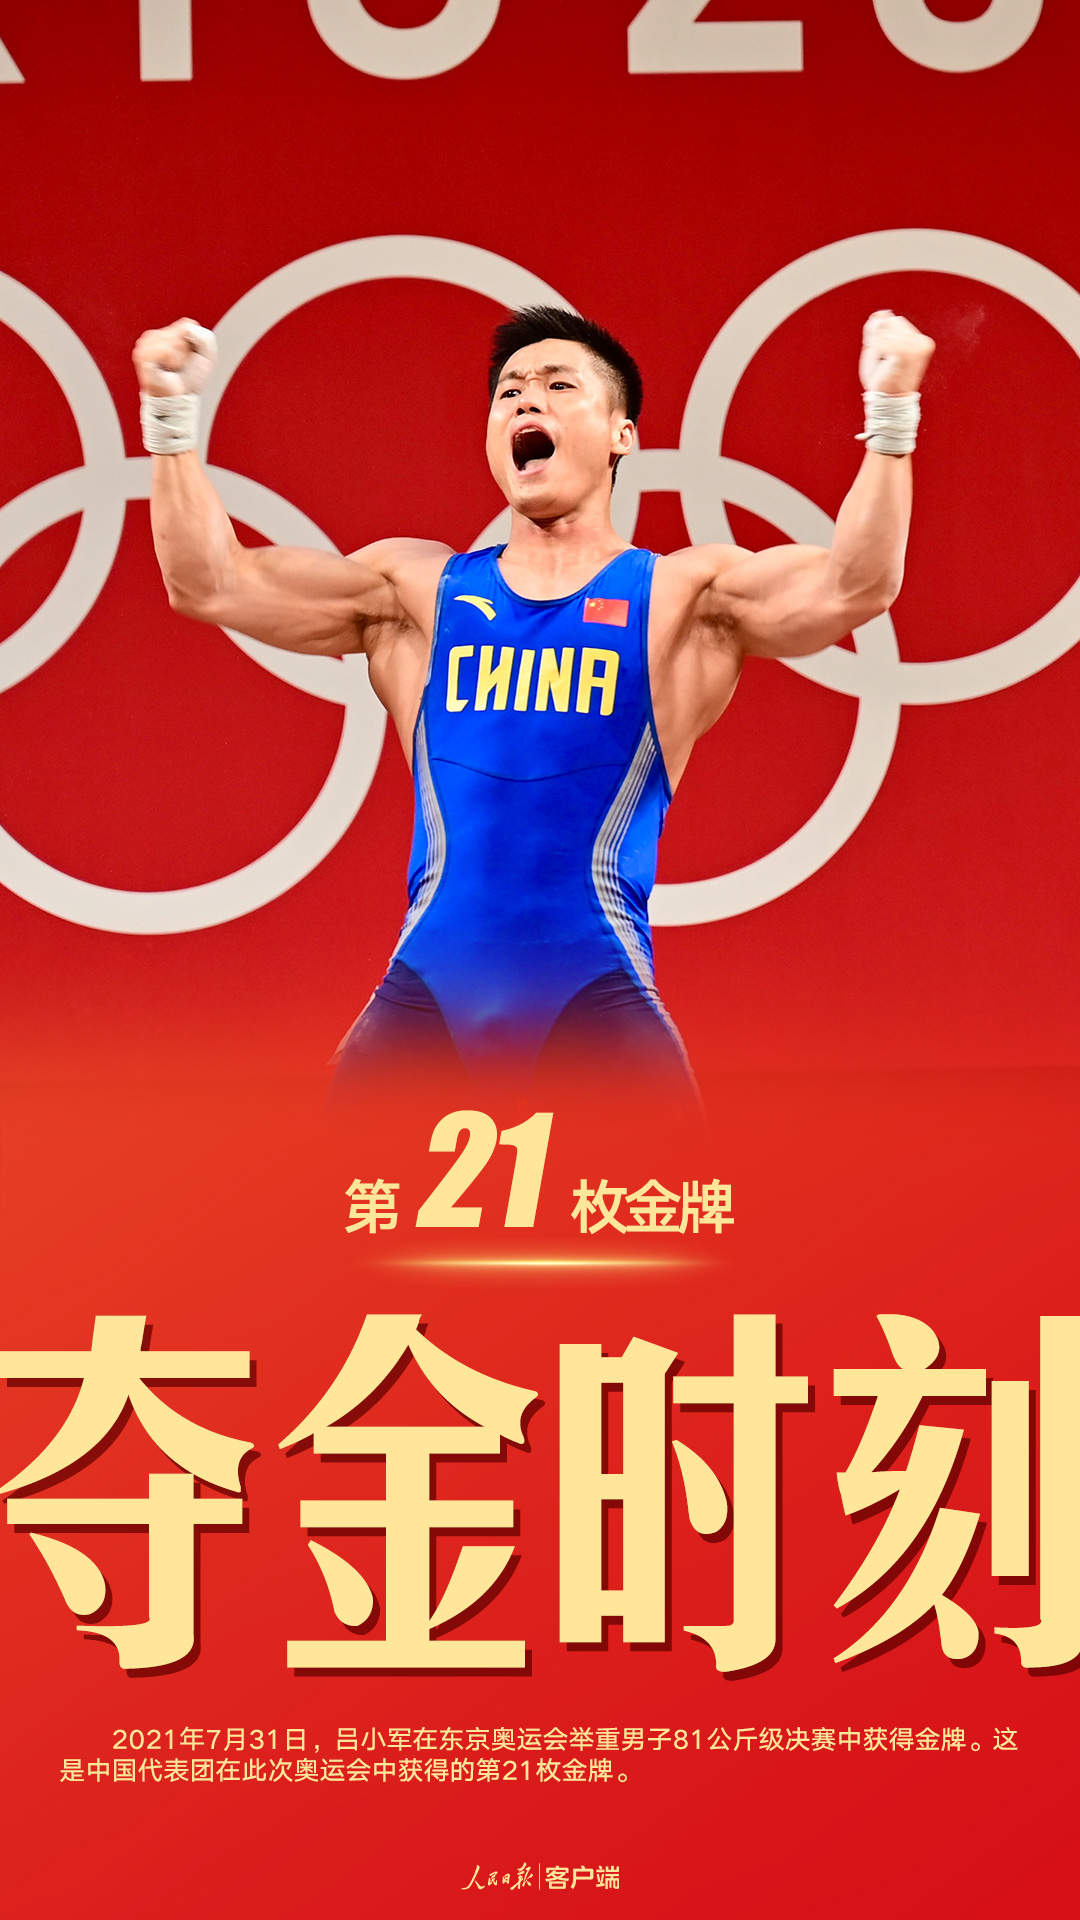 祝贺！中国队位列奖牌榜第三位 金牌数、奖牌数均创历史最好成绩_要闻聚焦_溆浦新闻网